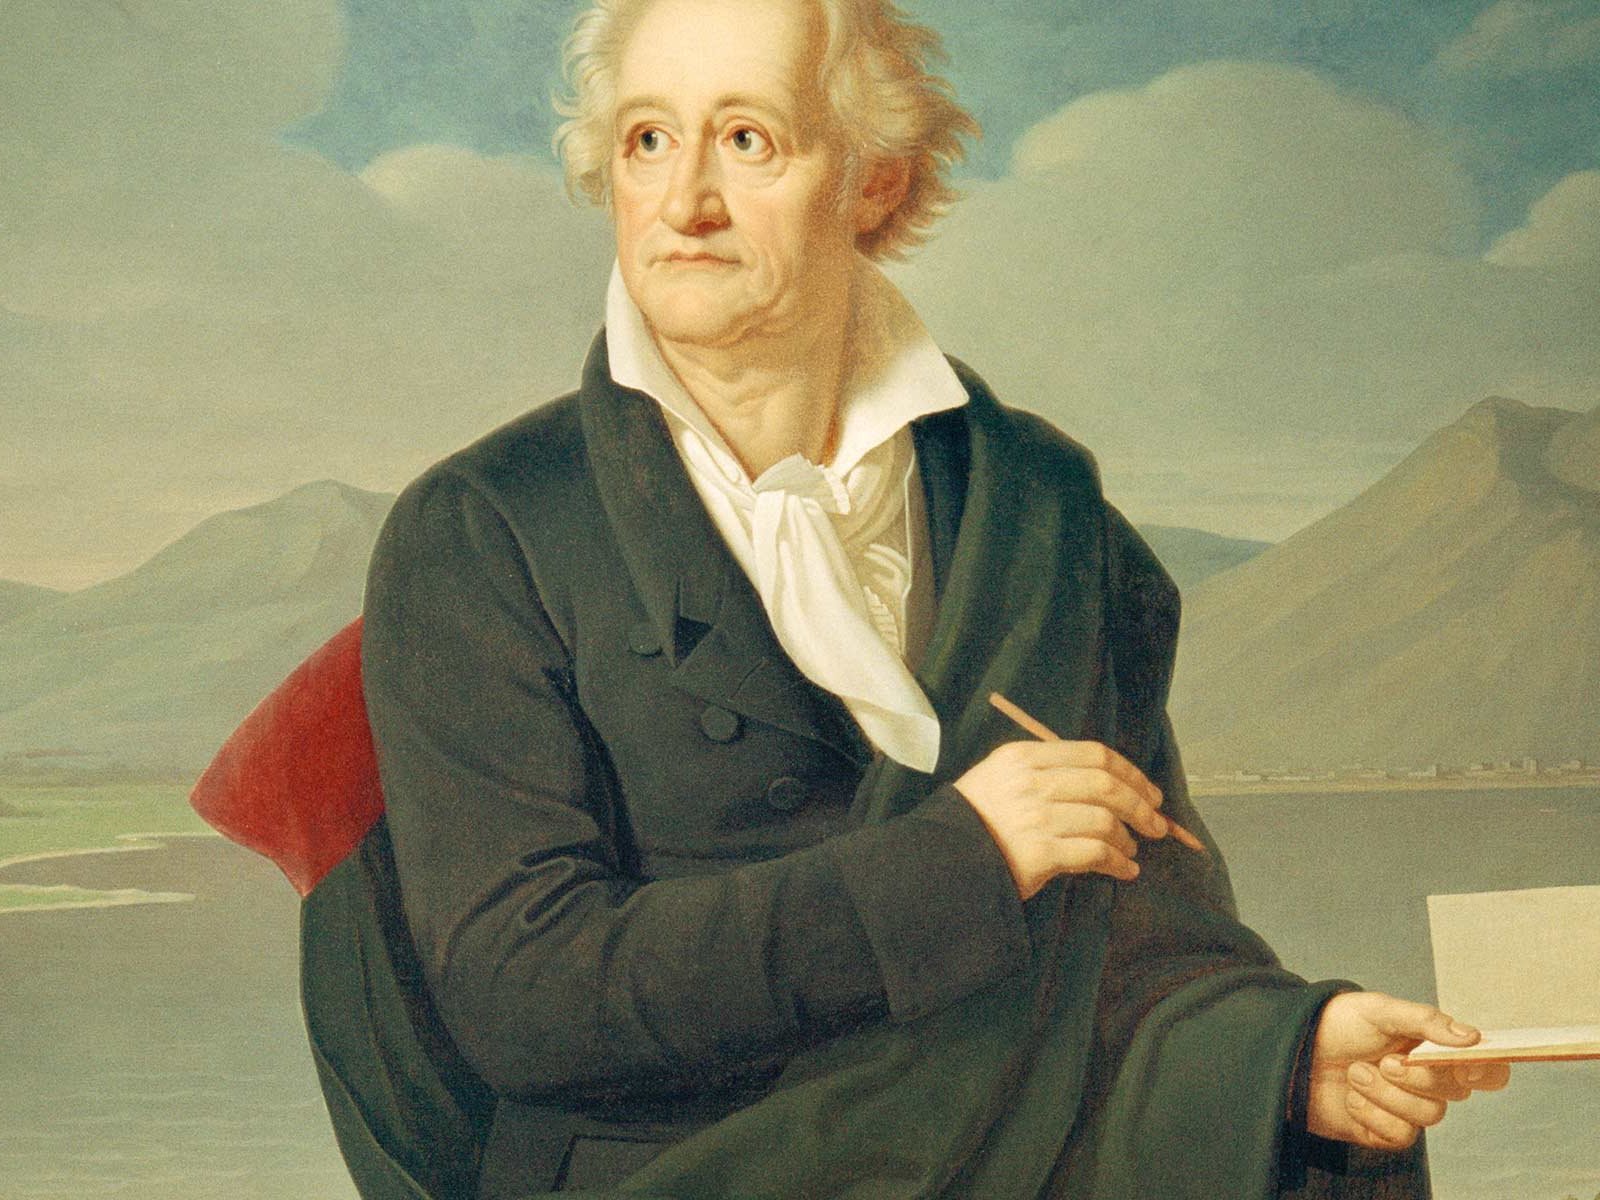 Johann Wolfgang von Goethe, sichtlich ergraut, vor dem Vesuv.